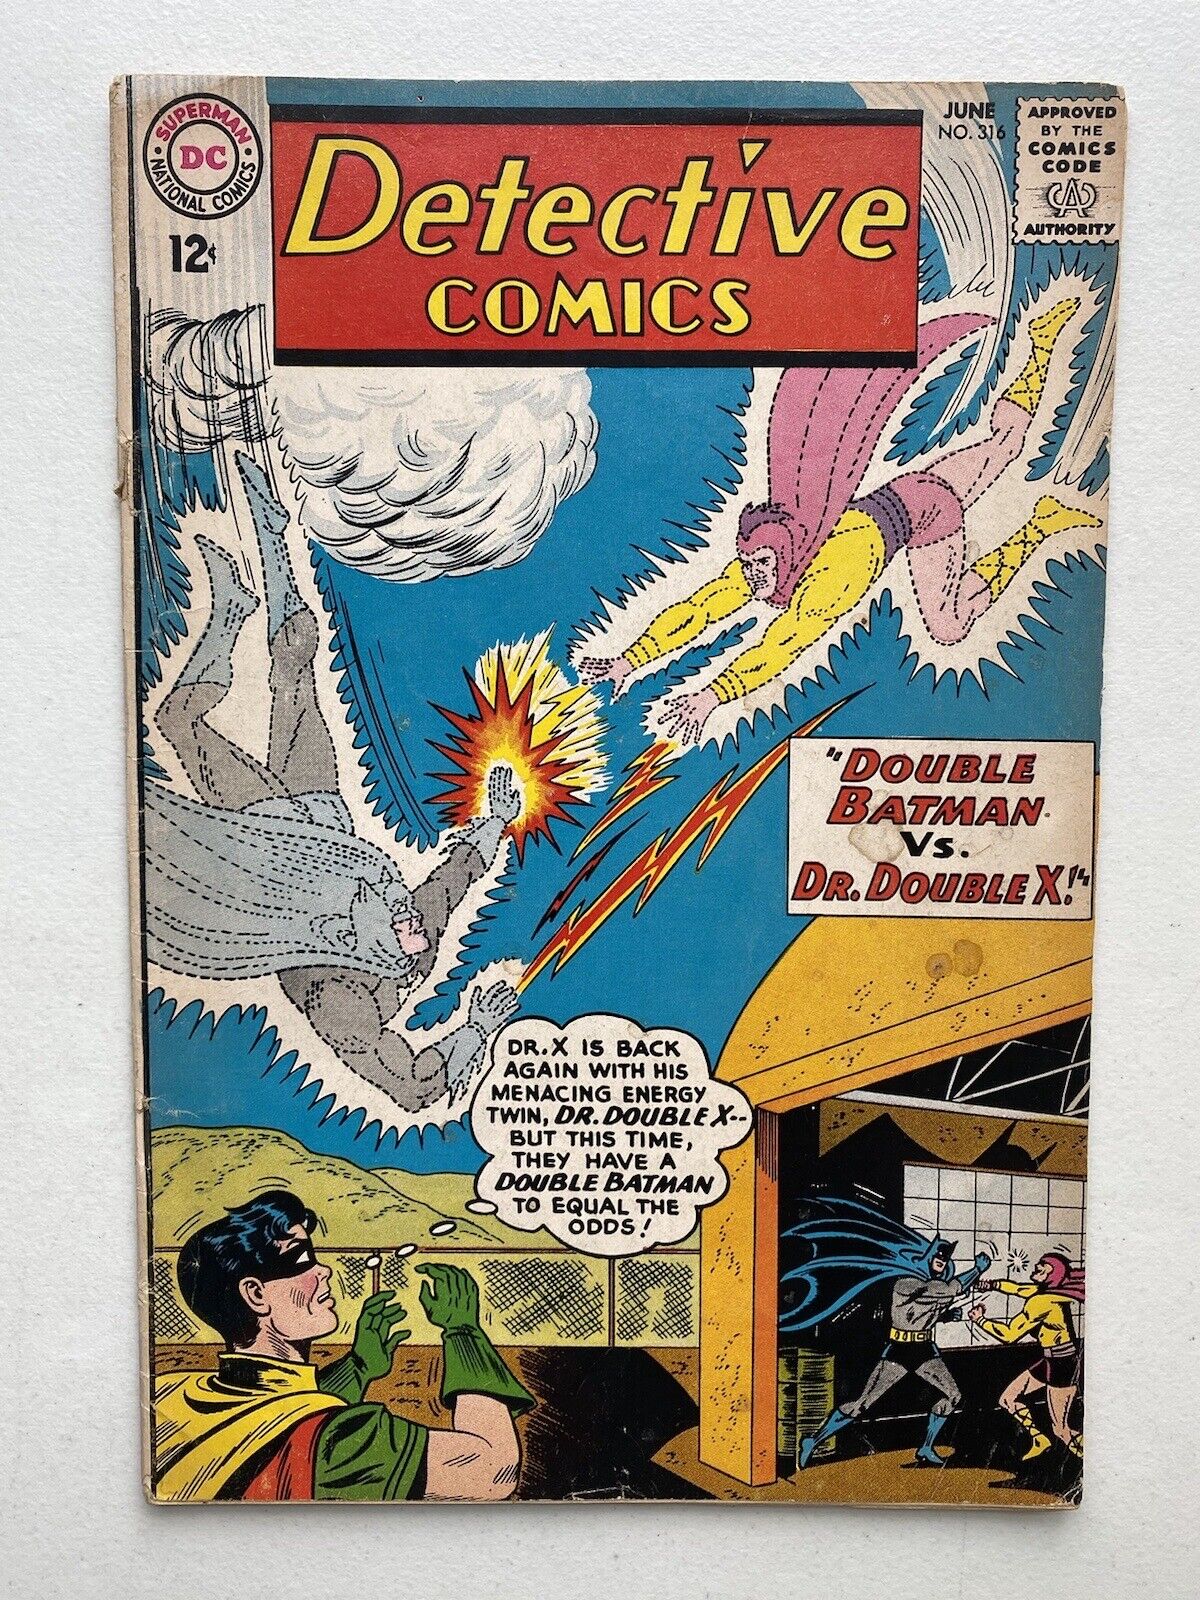 Detective Comics #316 (1963) Silver Age Batman Comic, Double Batman vs. Double X